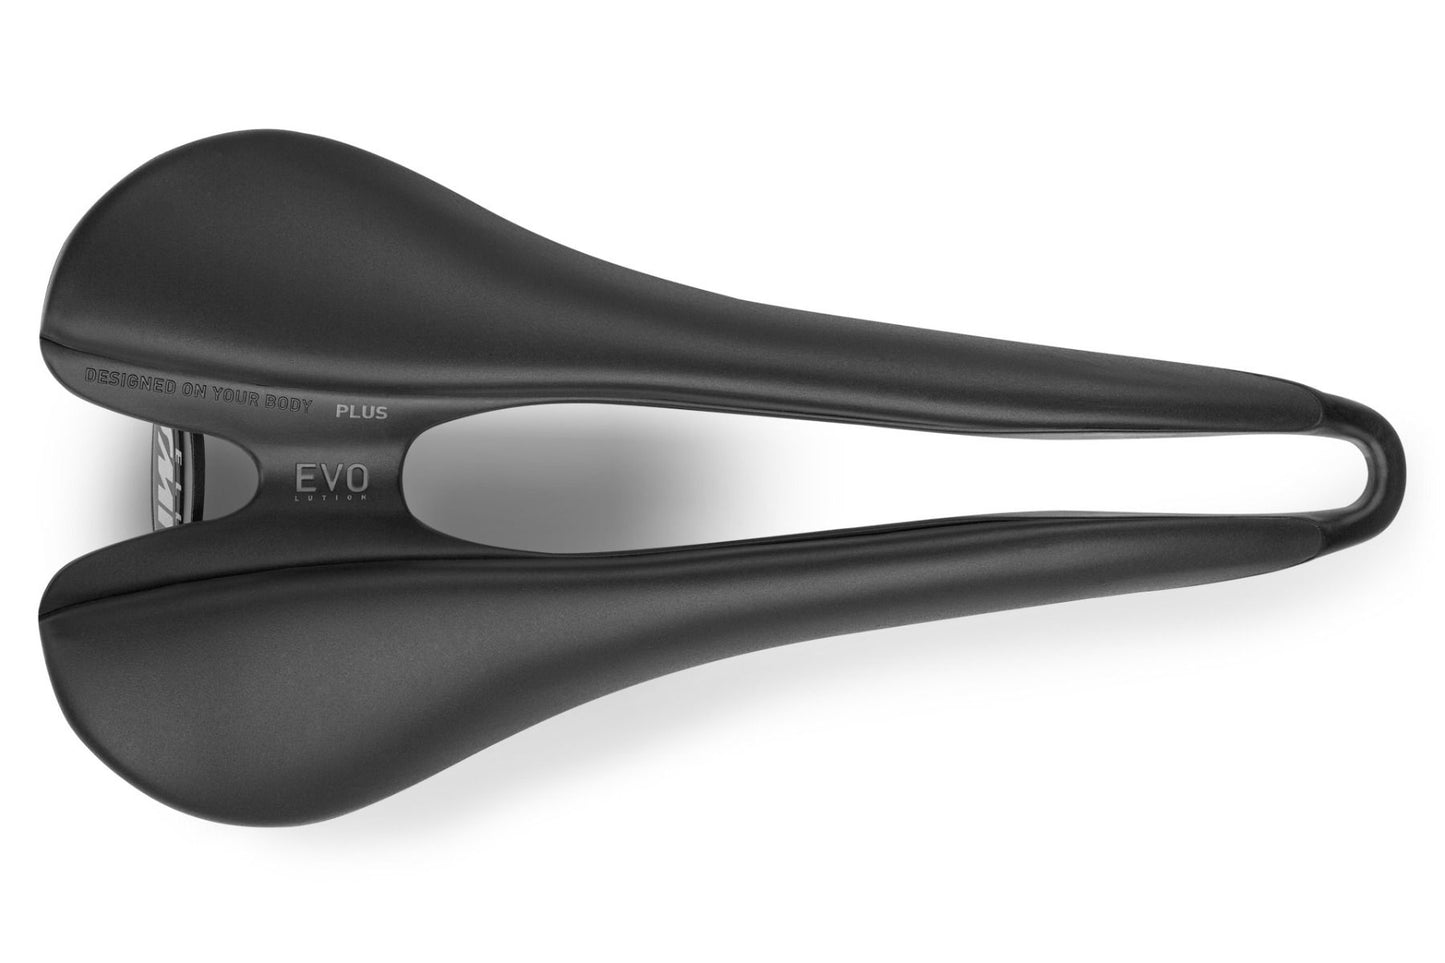 Selle SMP EVO Plus Saddle with Steel Rails (Black)